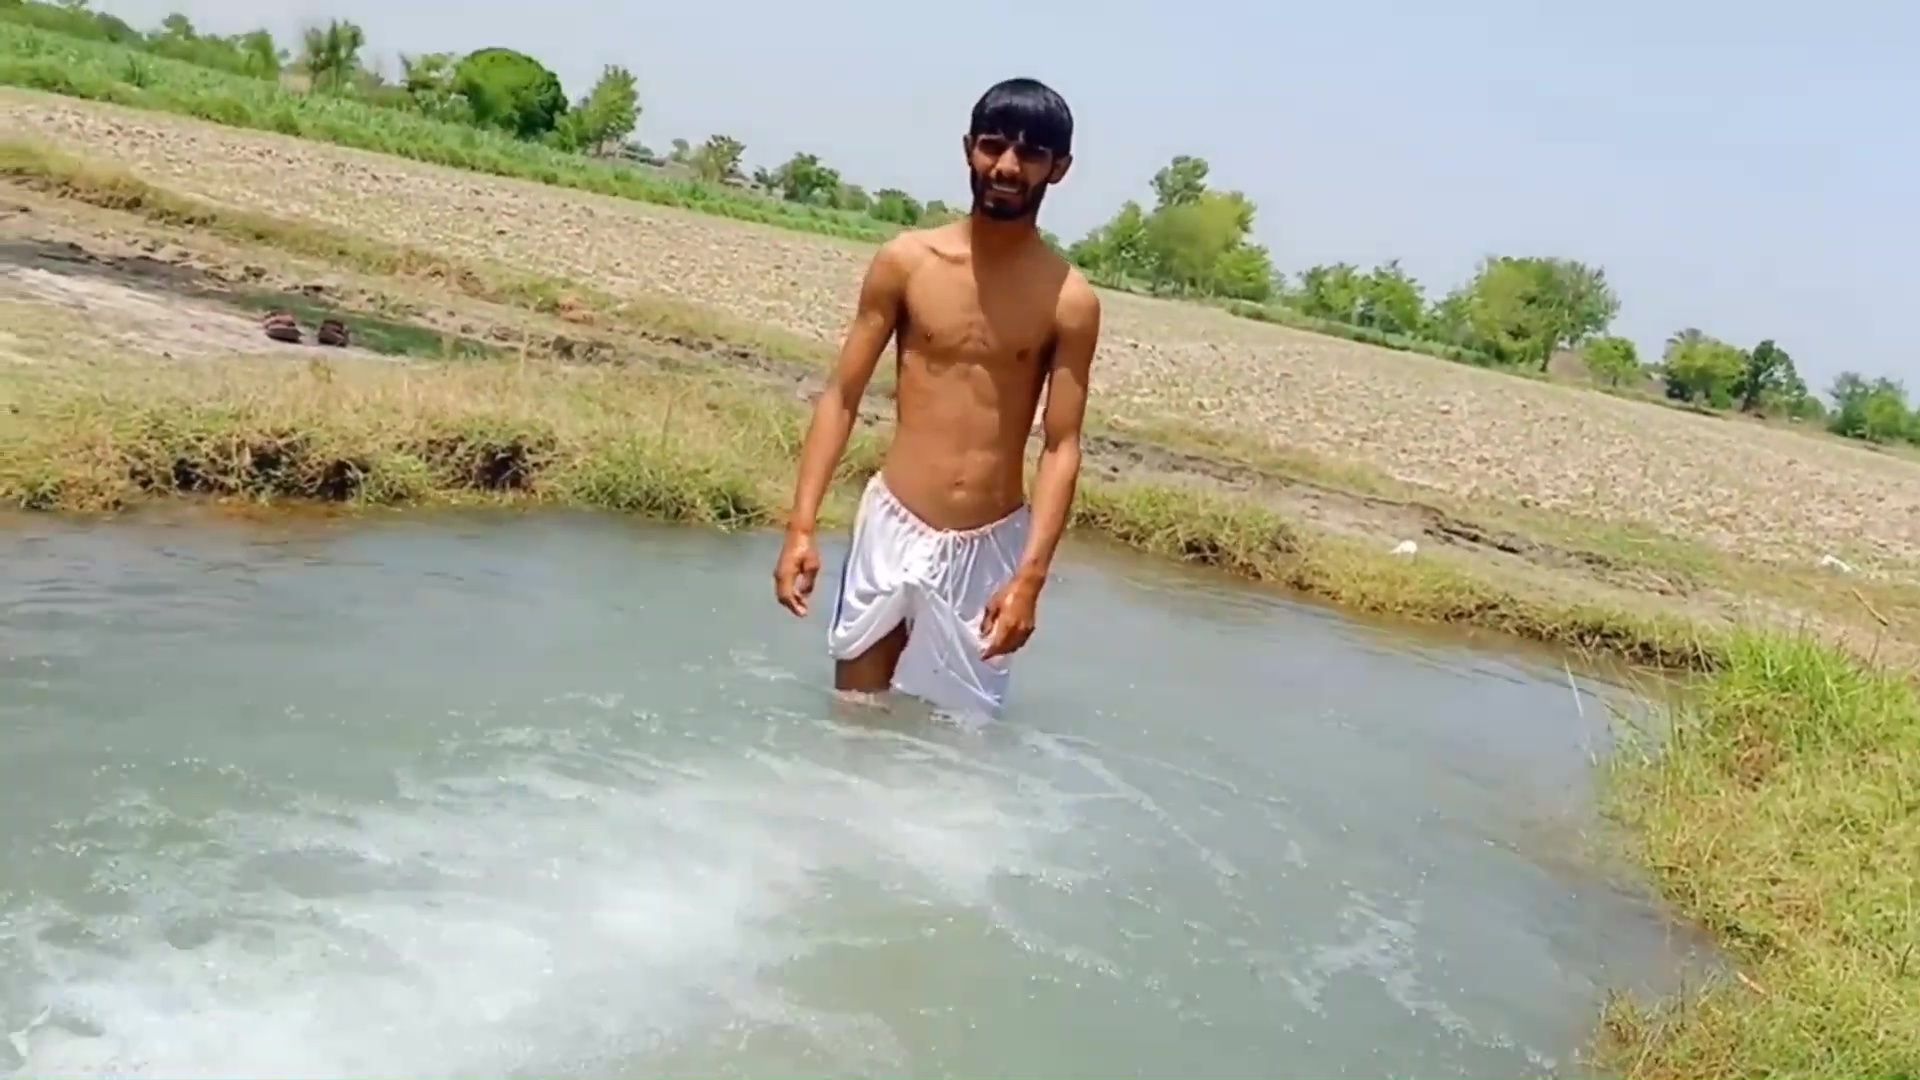 Pakistani boy -  wet, hard and beautiful